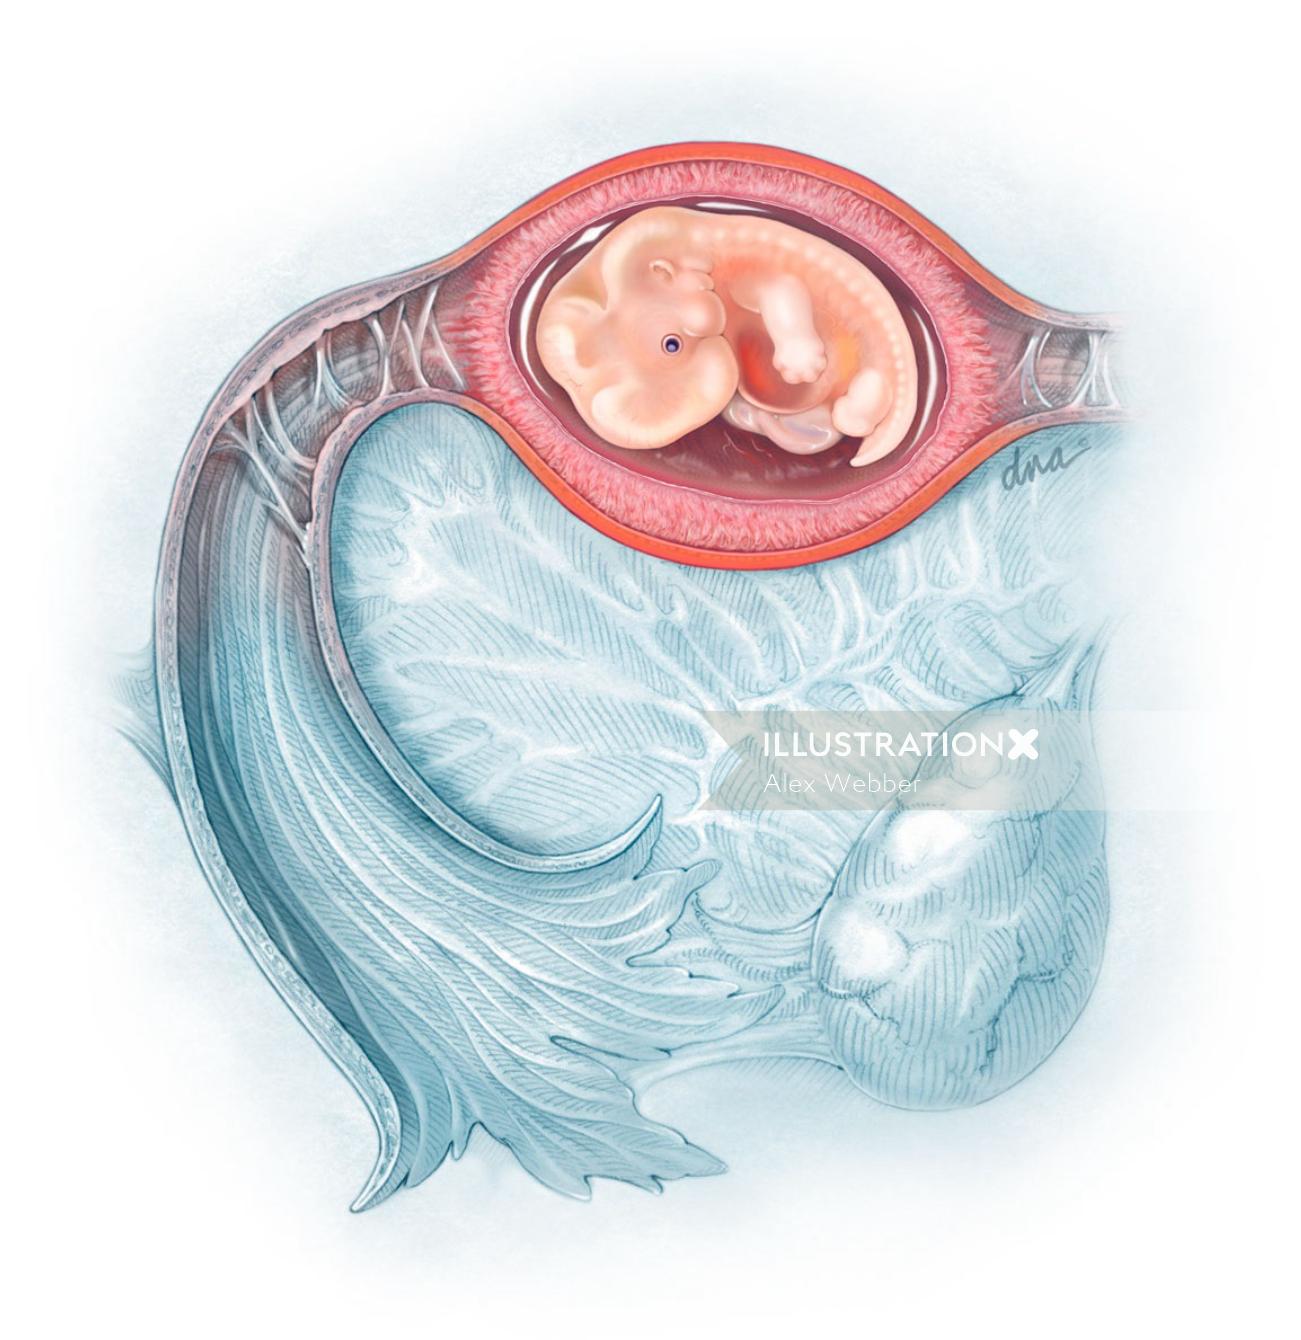 Vista interna da ilustração do feto das trompas de Falópio